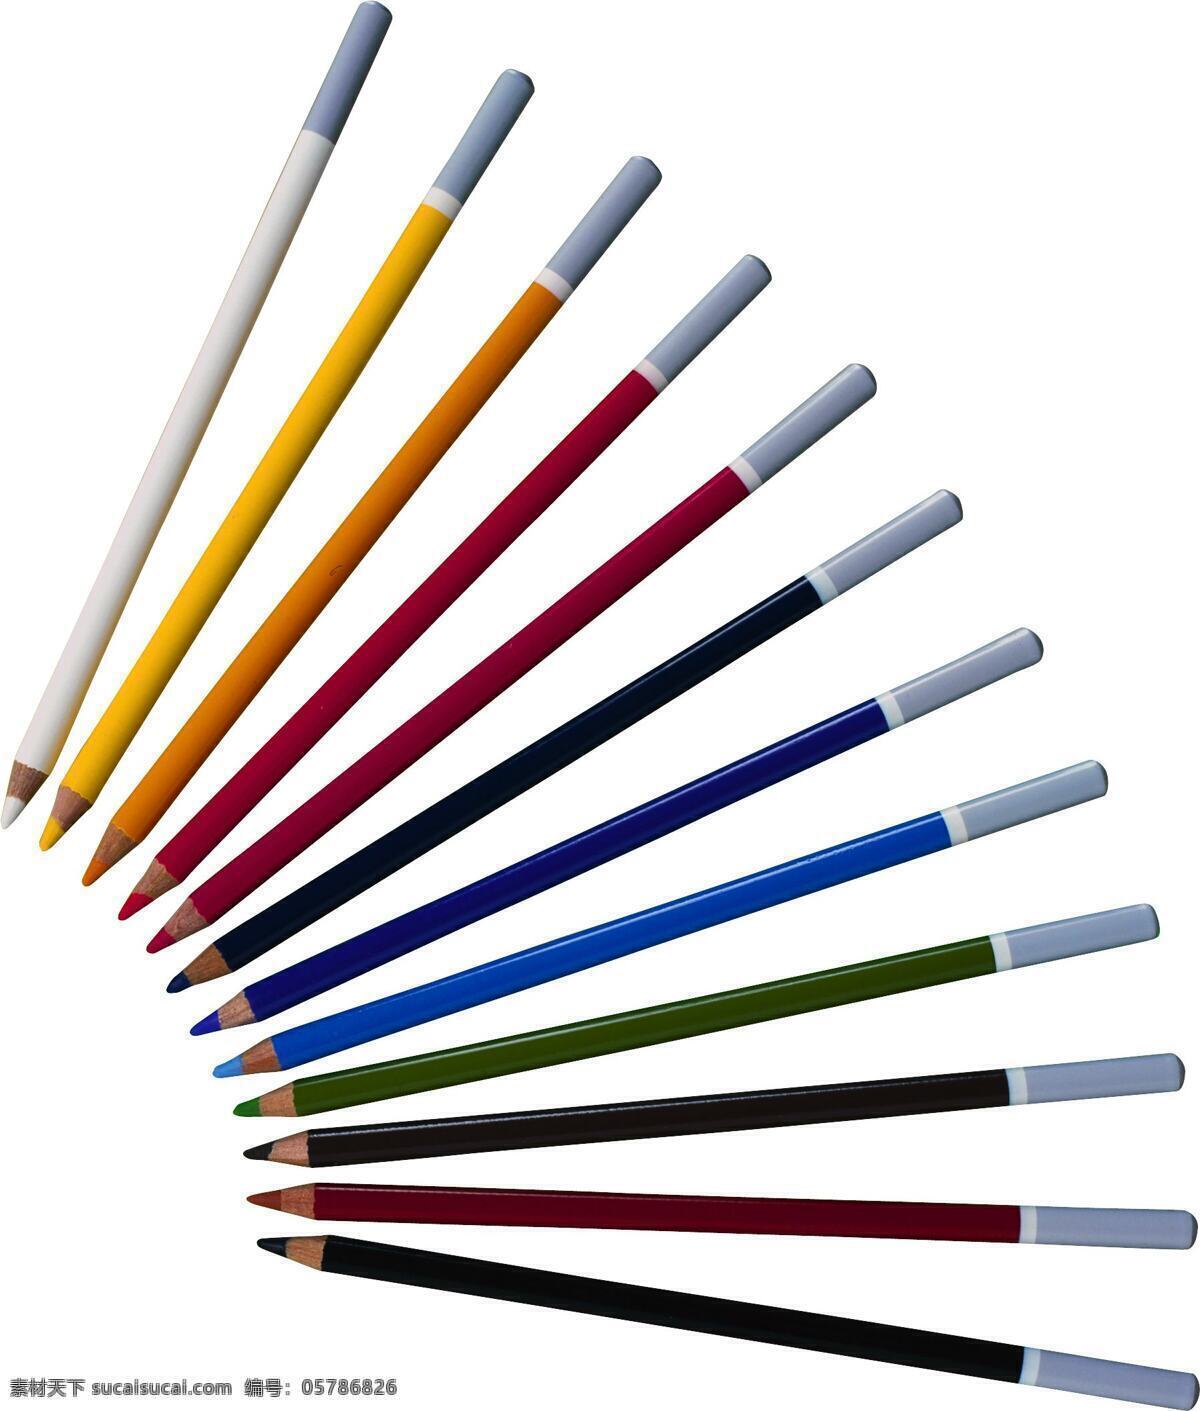 排成 扇形 铅笔 笔 绘画笔 彩色铅笔 文具 学习用品 办公学习 生活百科